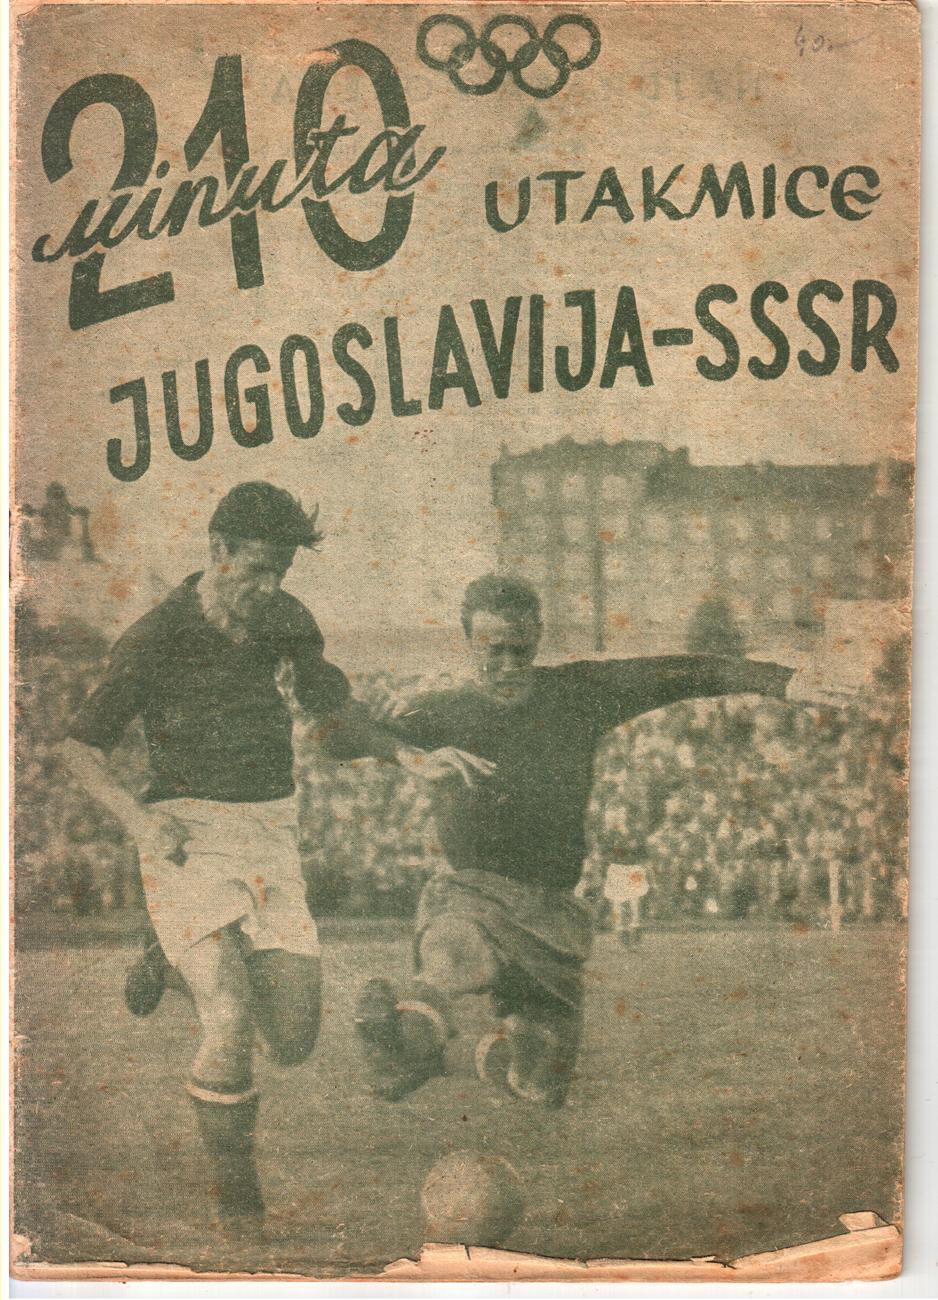 1952. Югославия - СССР. Олимпийские игры